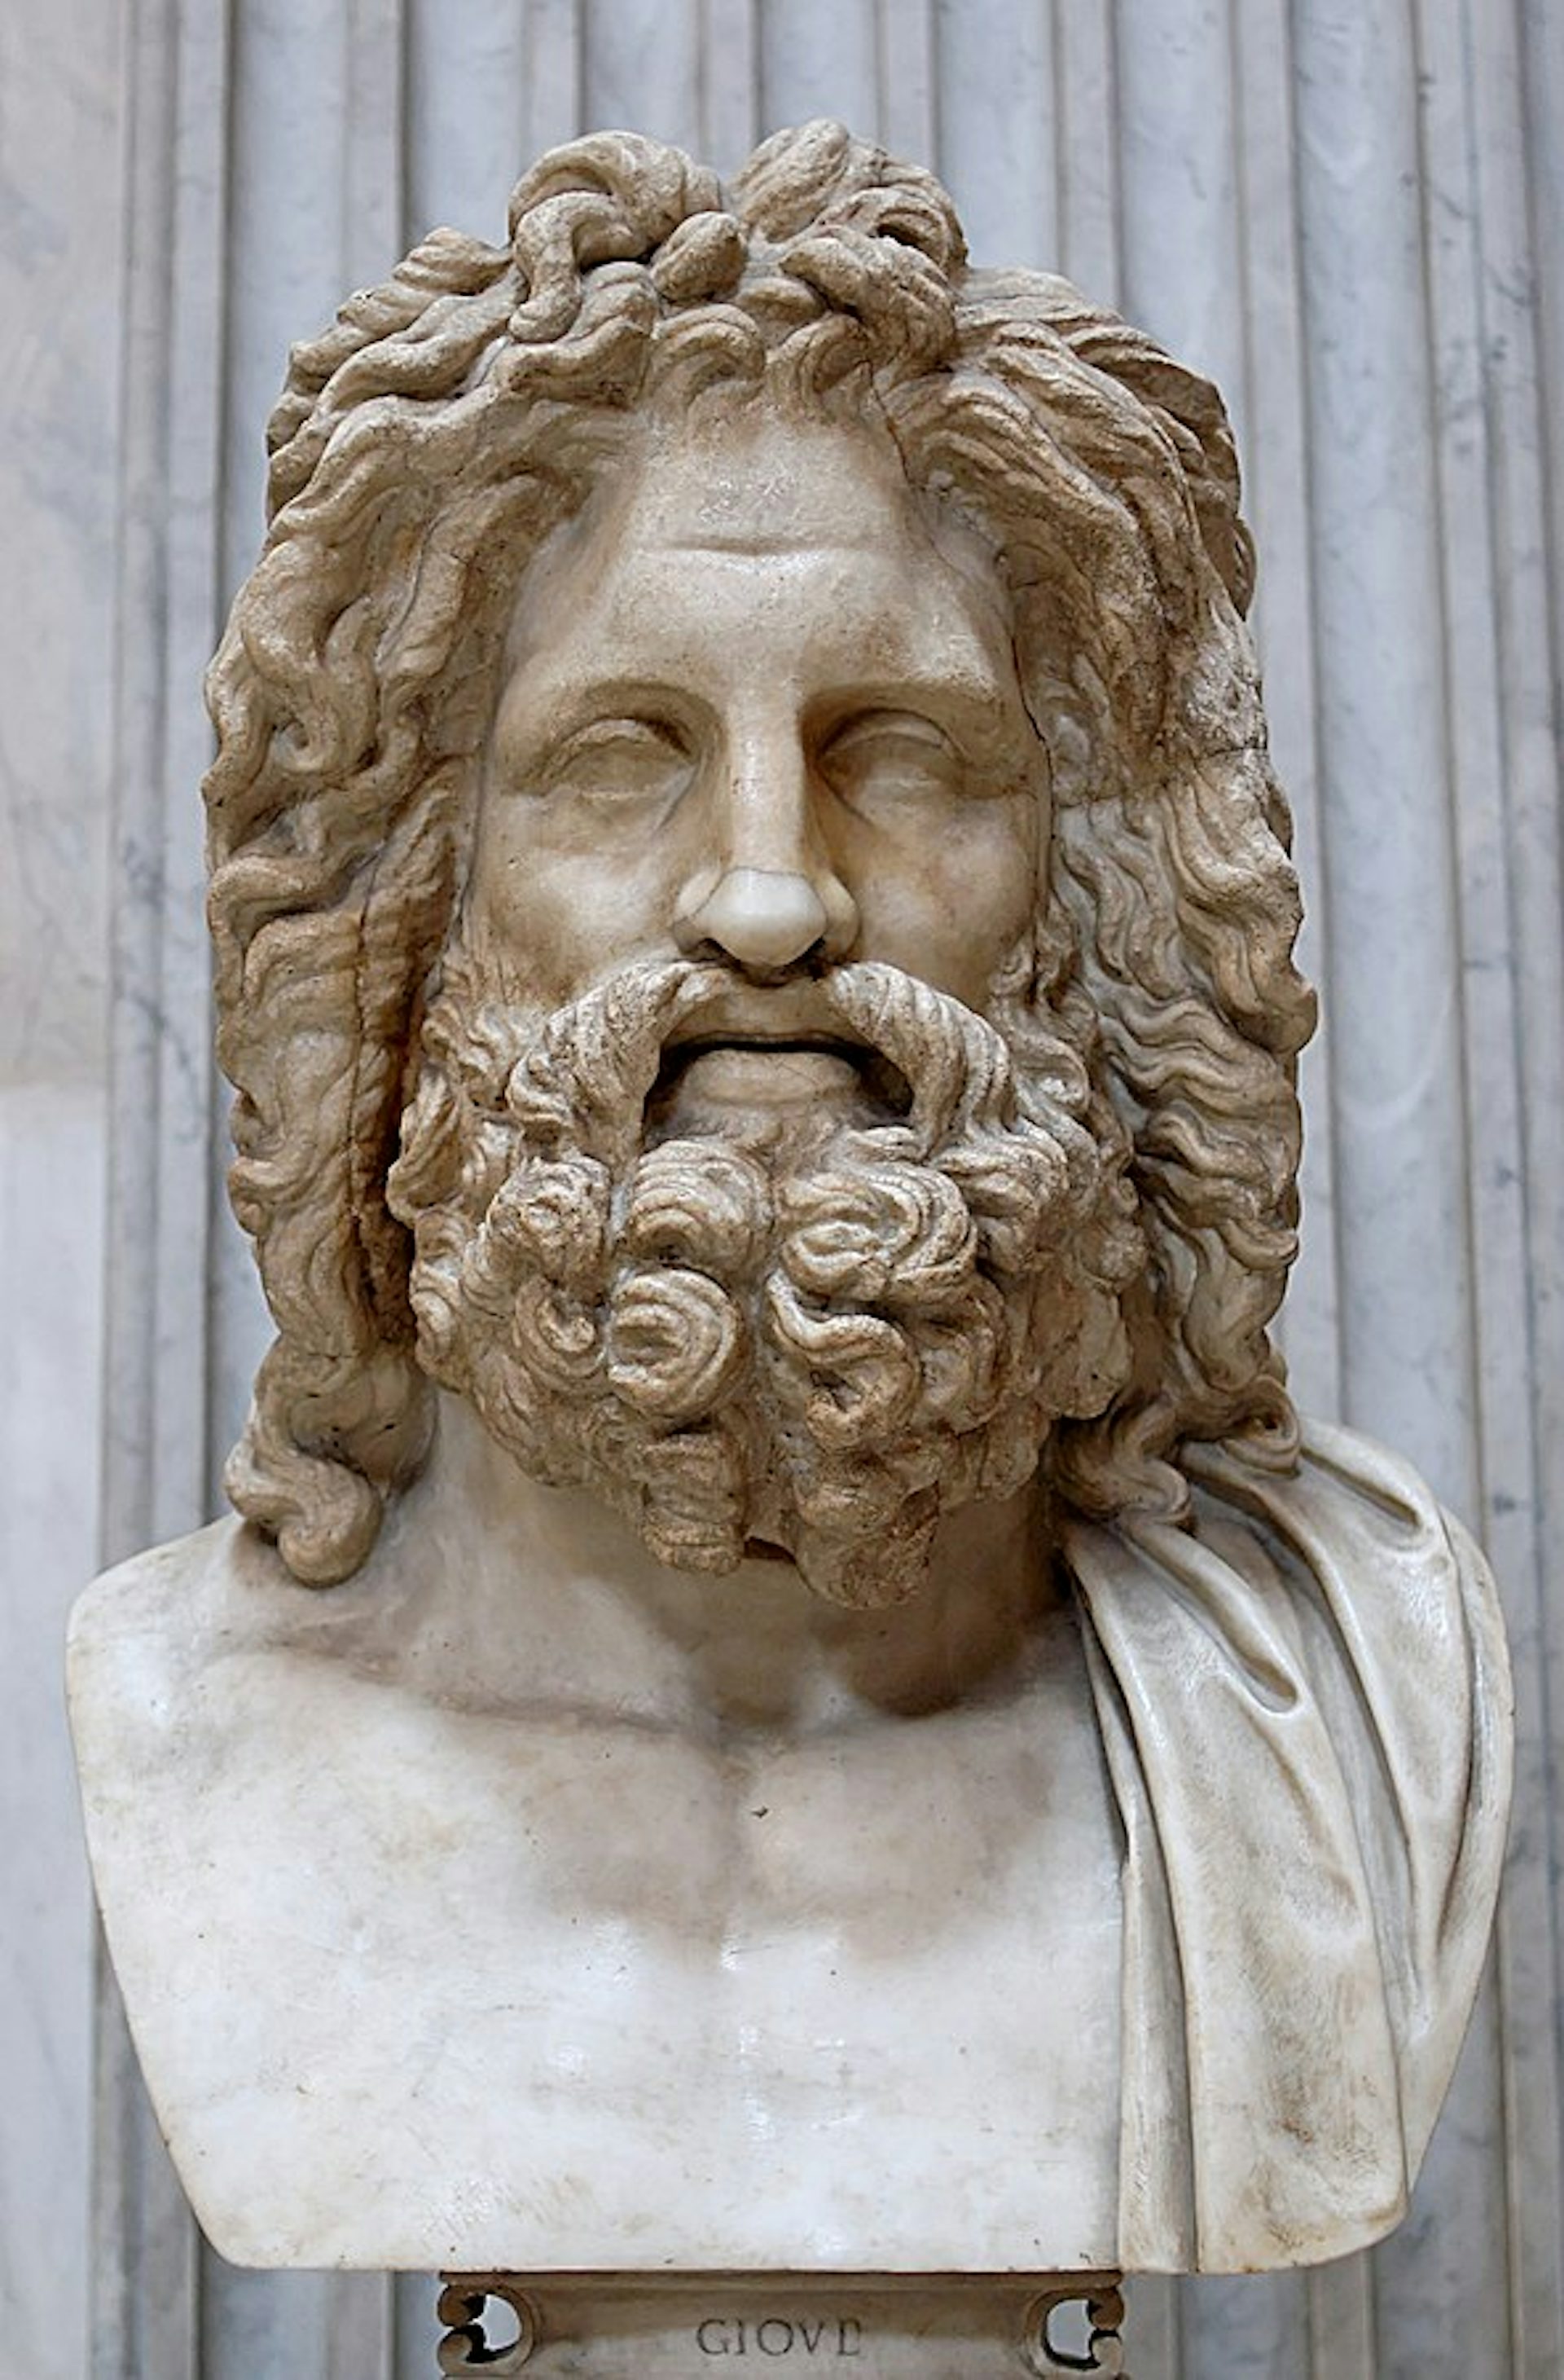 The “Zeus of Otricoli"